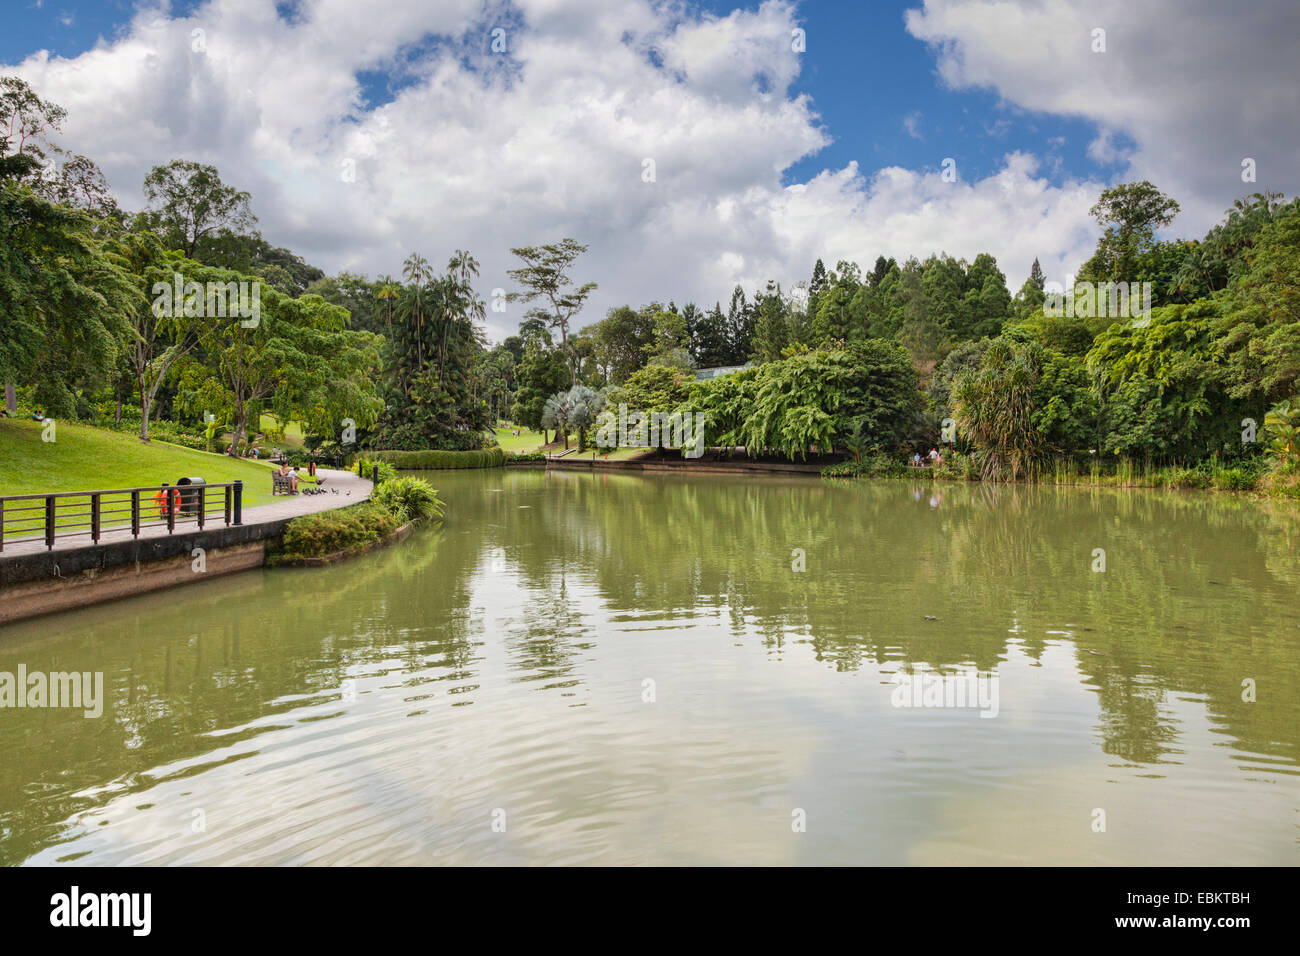 Singapore Botanic Gardens, Symphony Lake Stock Photo